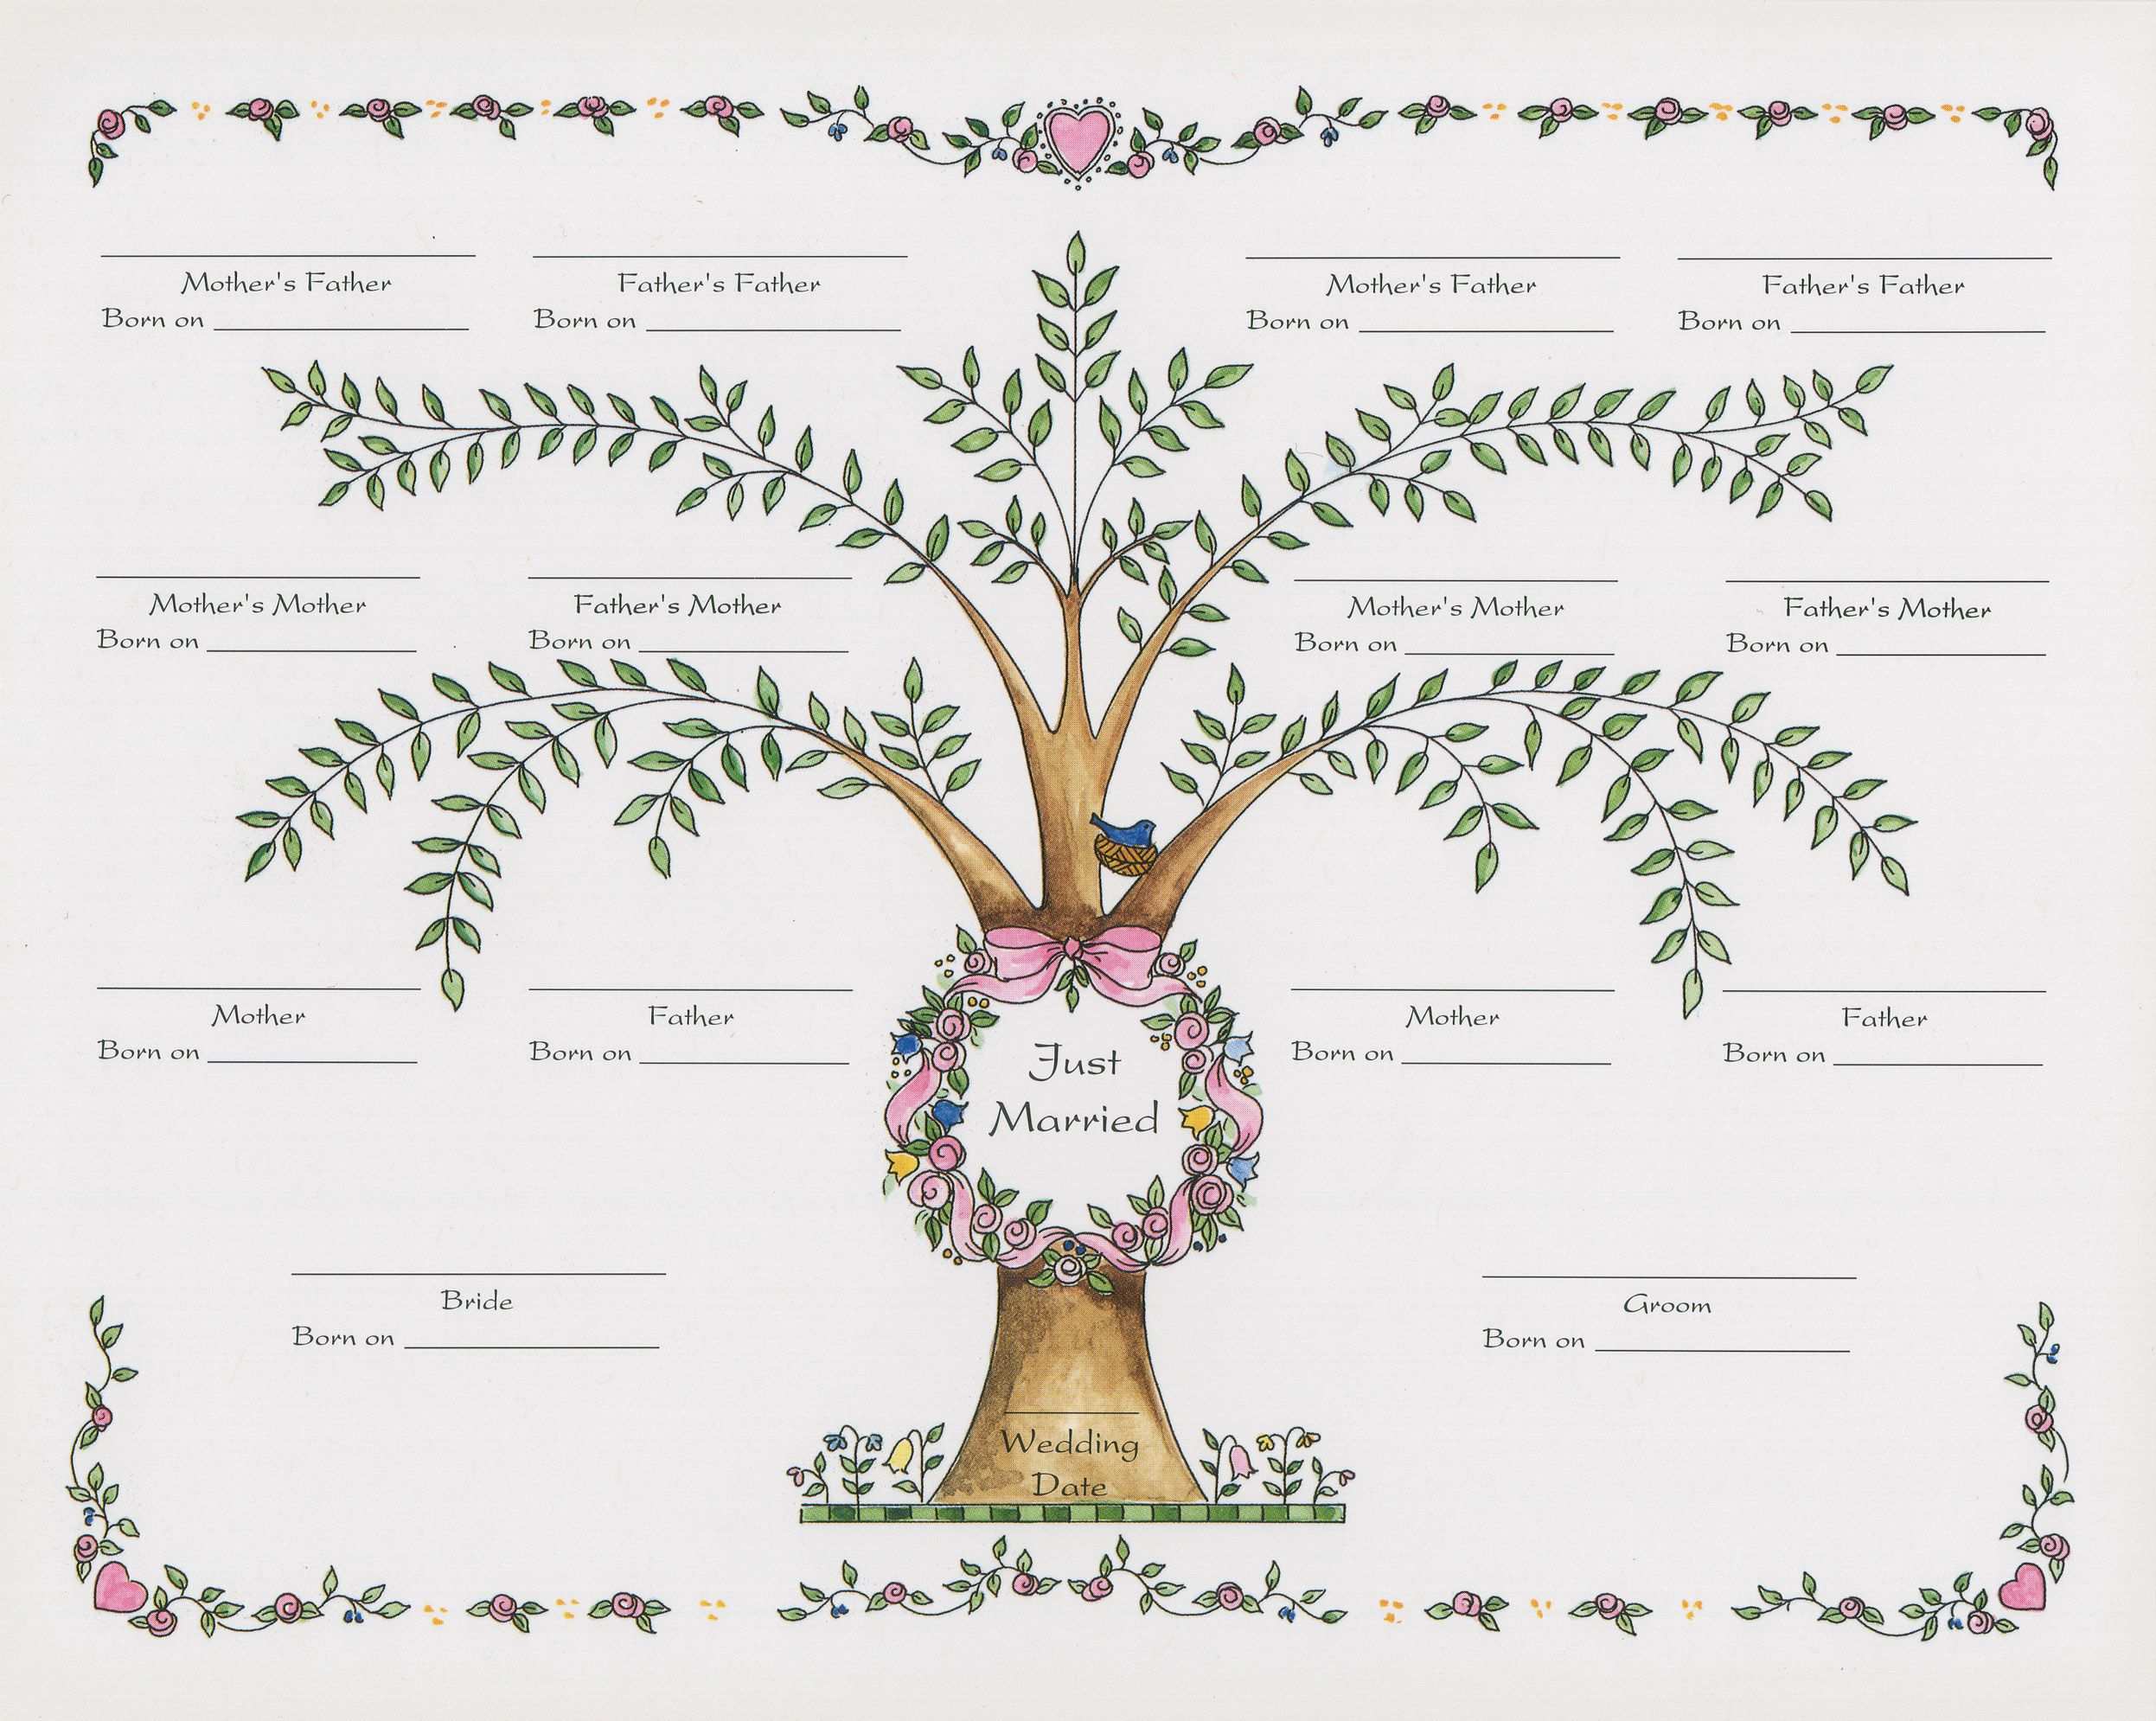 Fun Family Tree Template With Hearts Stammbaum Vorlage Familienstammbaum Stammbaum